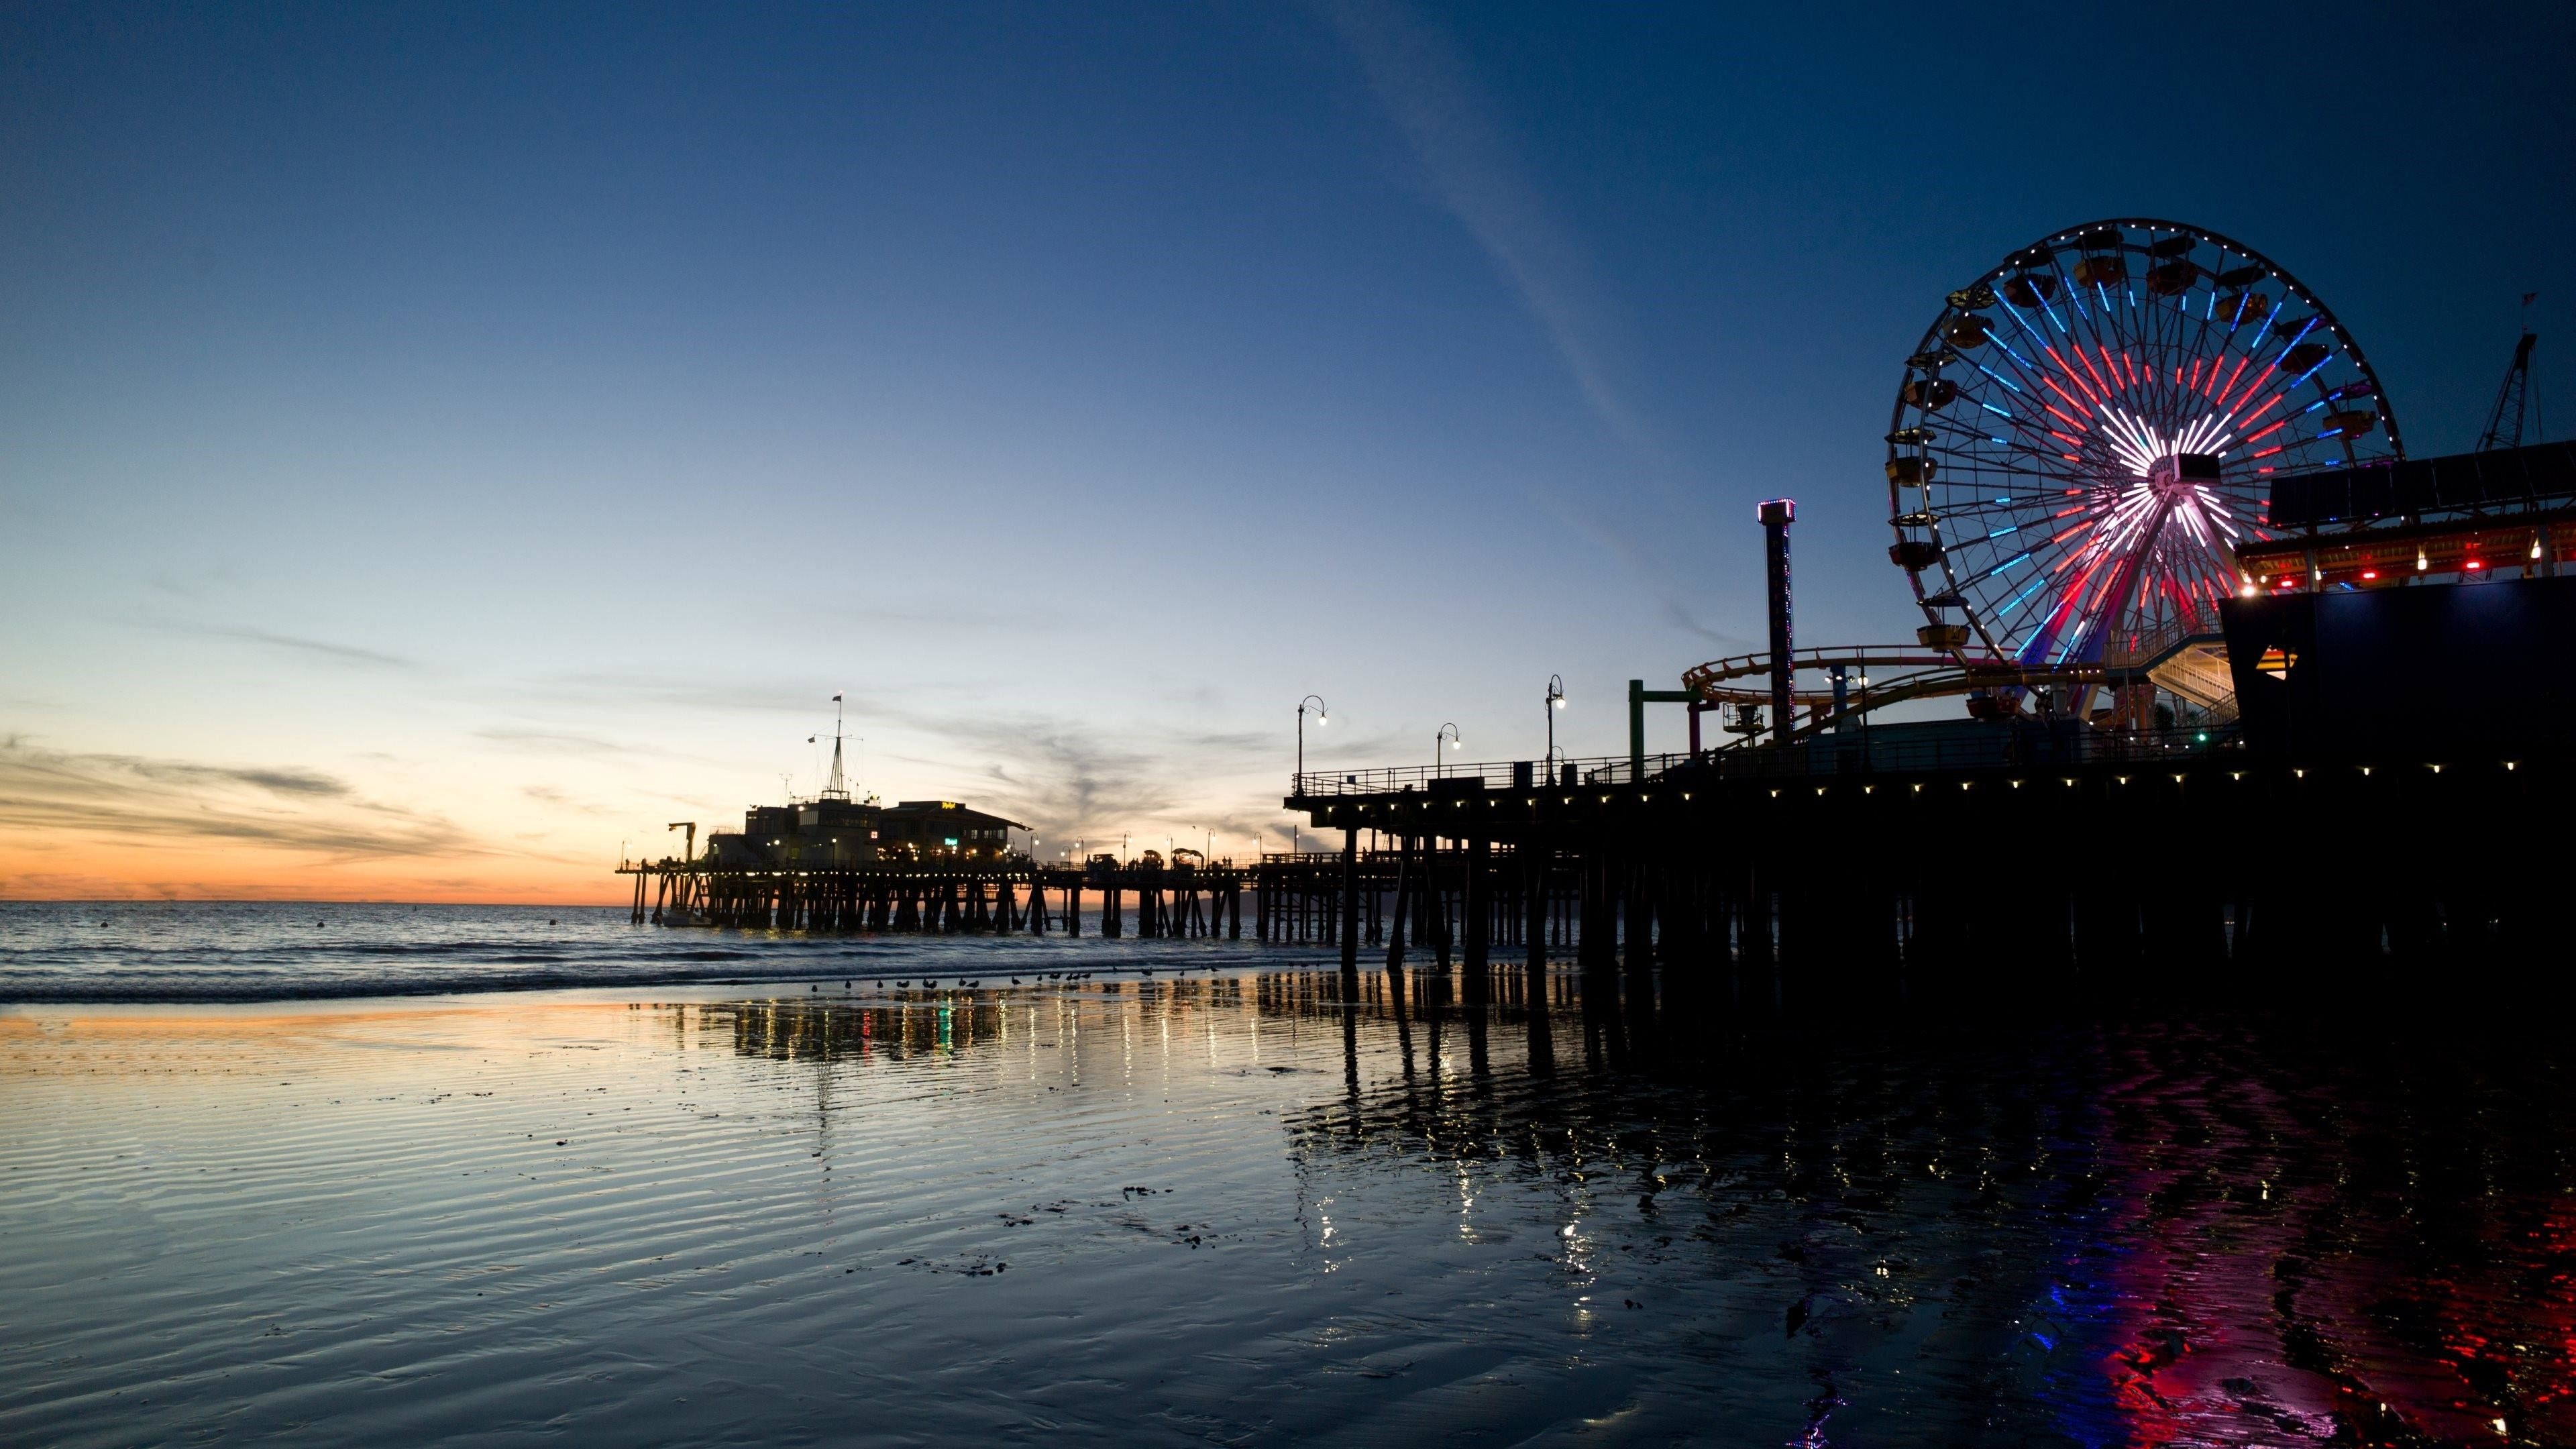 Fun Fair: Santa Monica, Los Angeles, An amusement show, Rides. 3840x2160 4K Wallpaper.